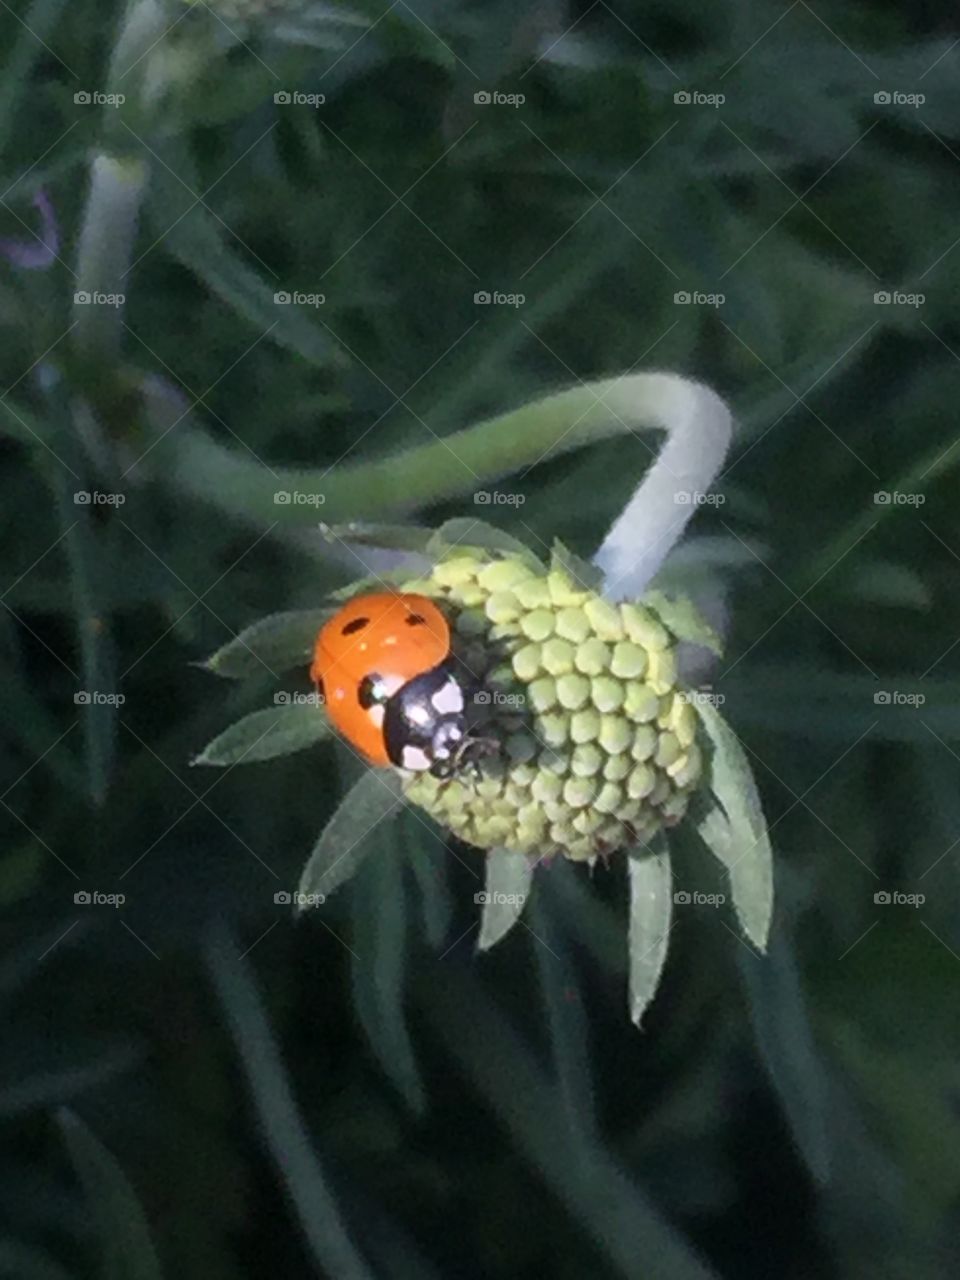 Ladybug on a bud